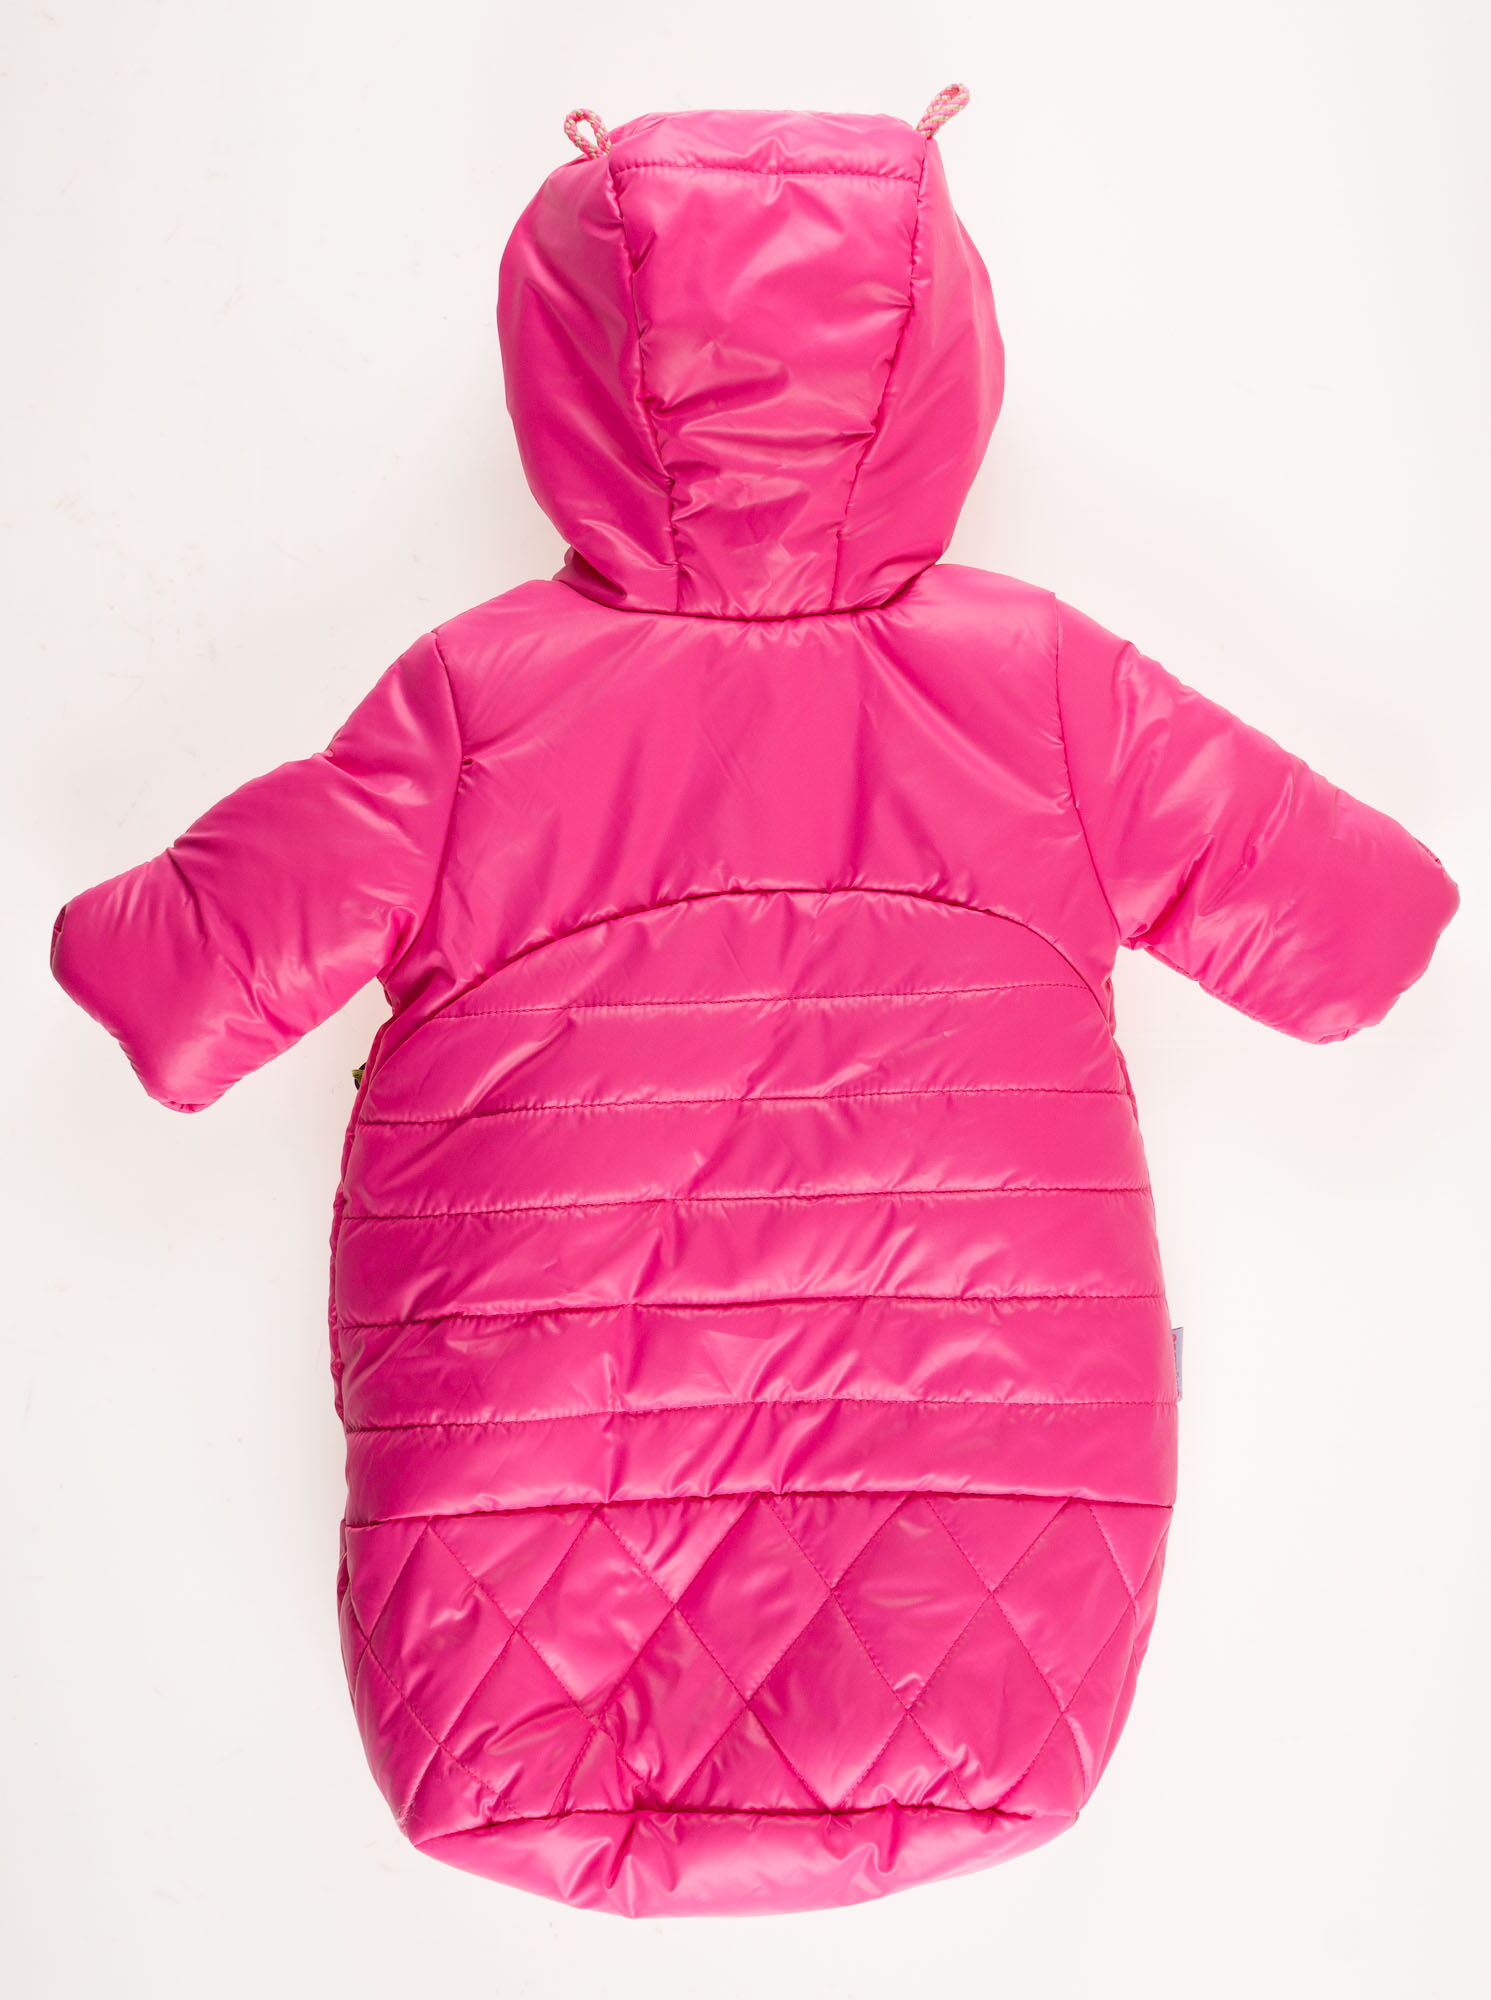 Конверт зимний для девочки Одягайко розовый 3204О - фотография